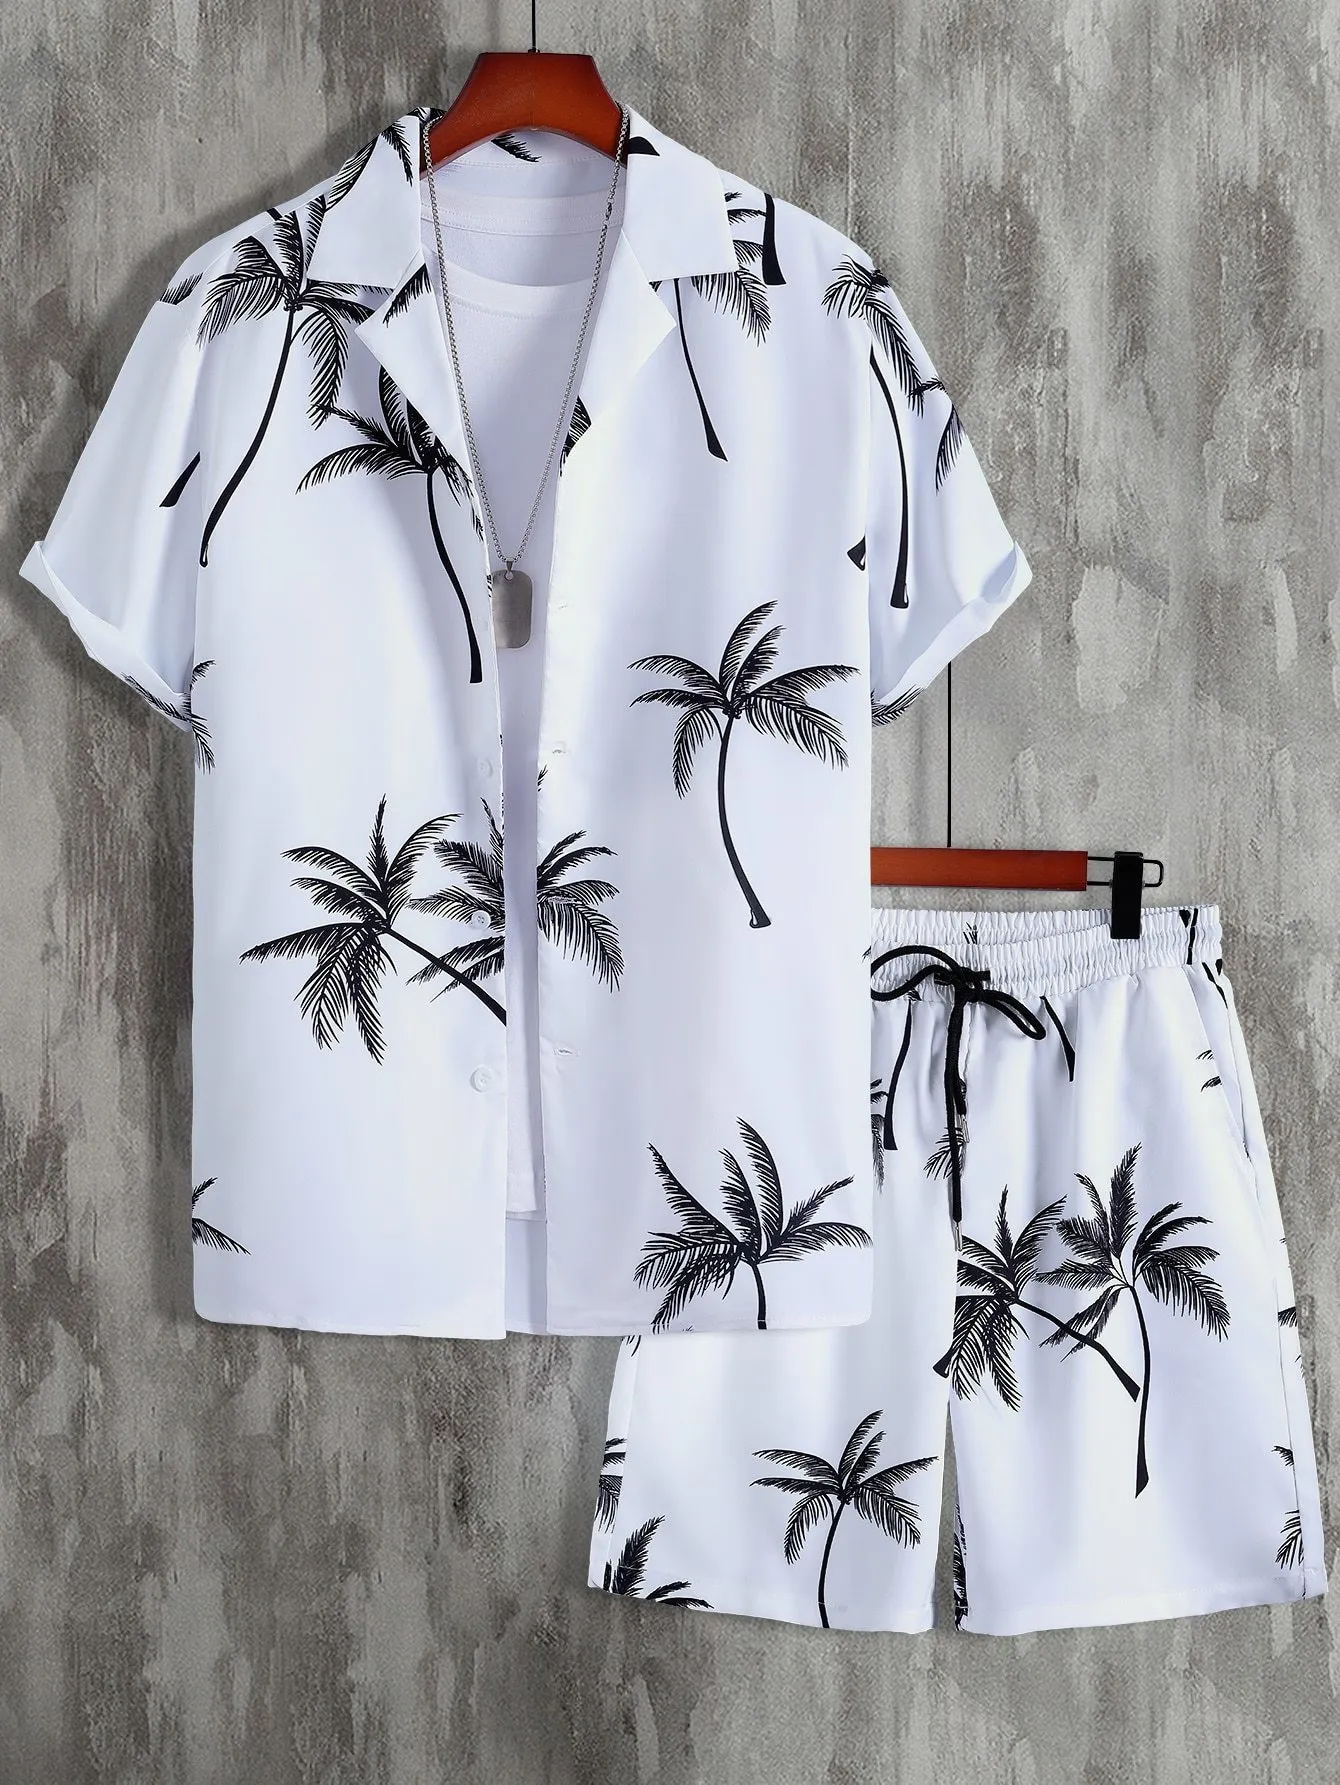 Survêtements pour hommes Hommes Aléatoire Palm Tree Print Shirt Cordon Taille Shorts Sans Tee 230511